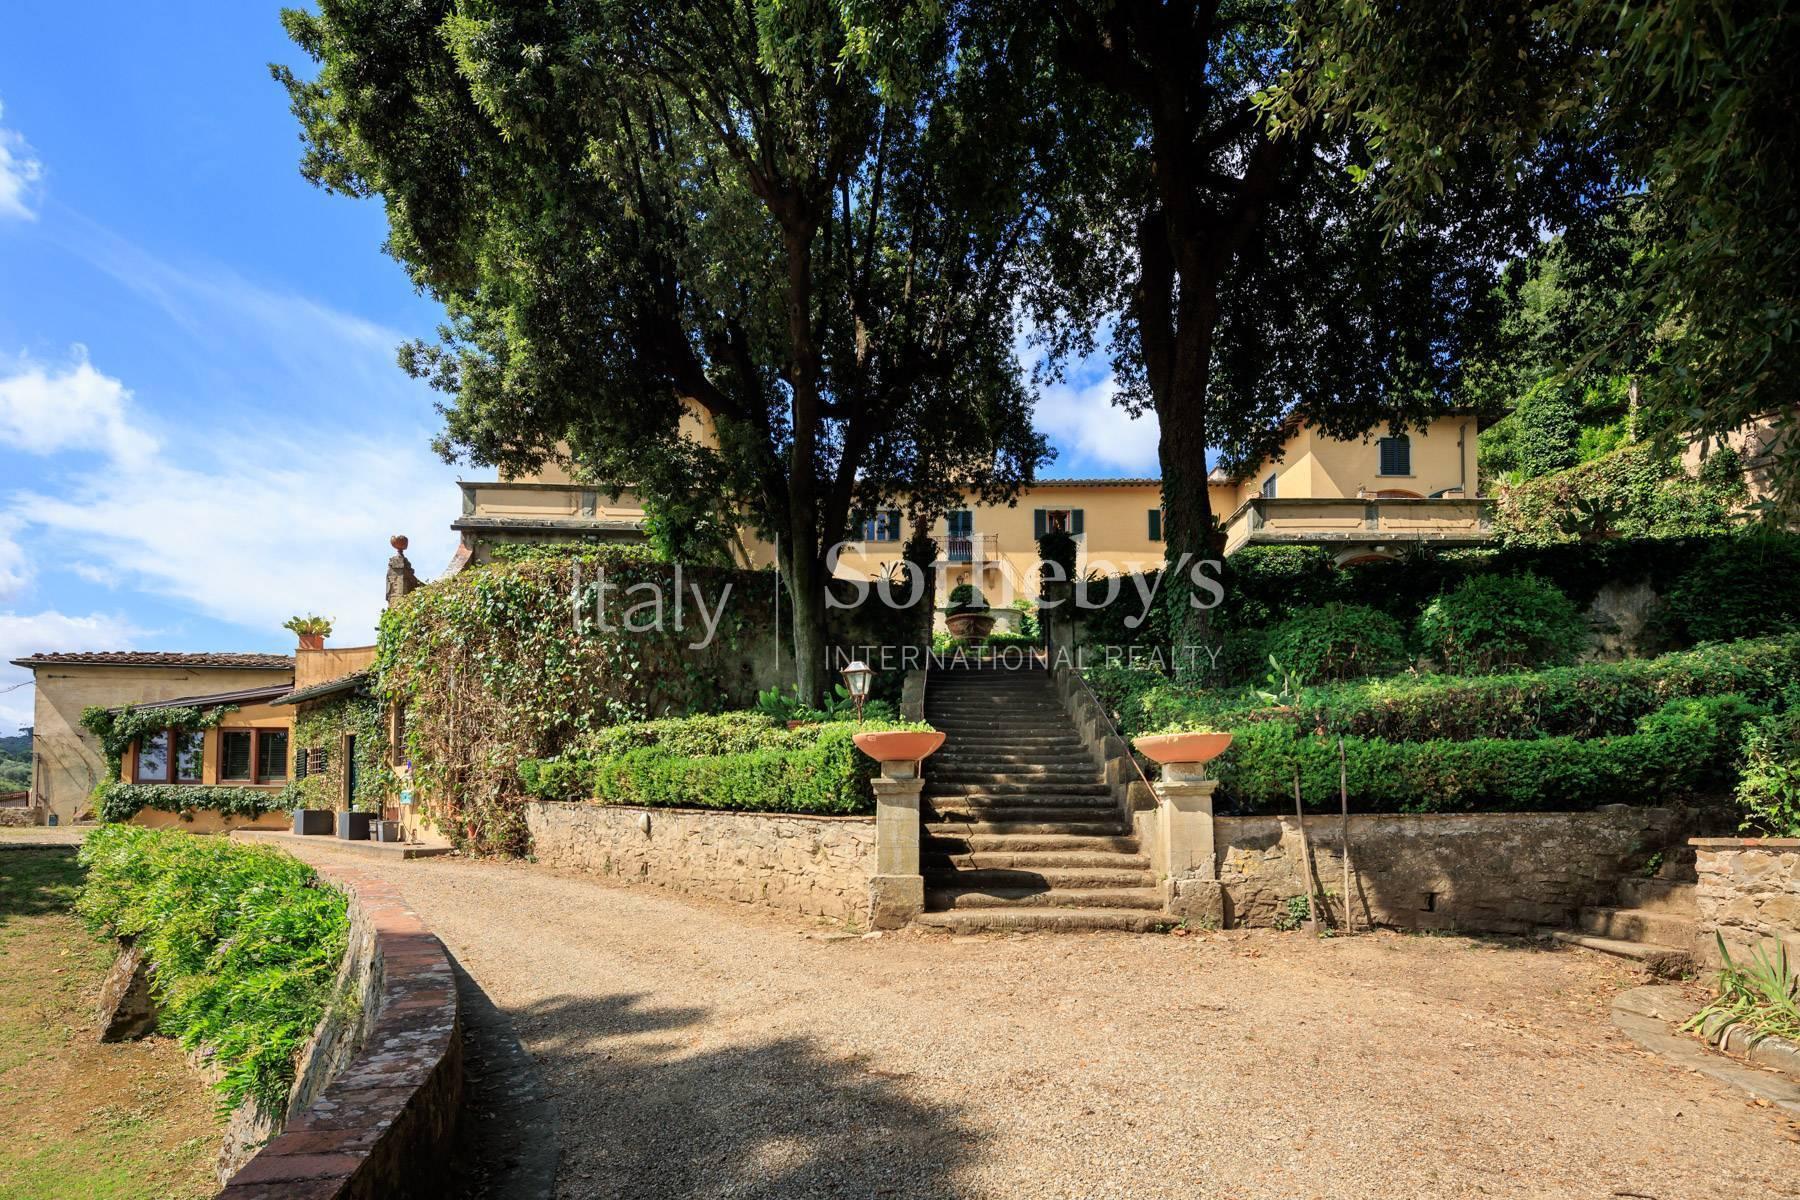 Prestigious apartment in historic villa close to Piazzale Michelangelo - 8